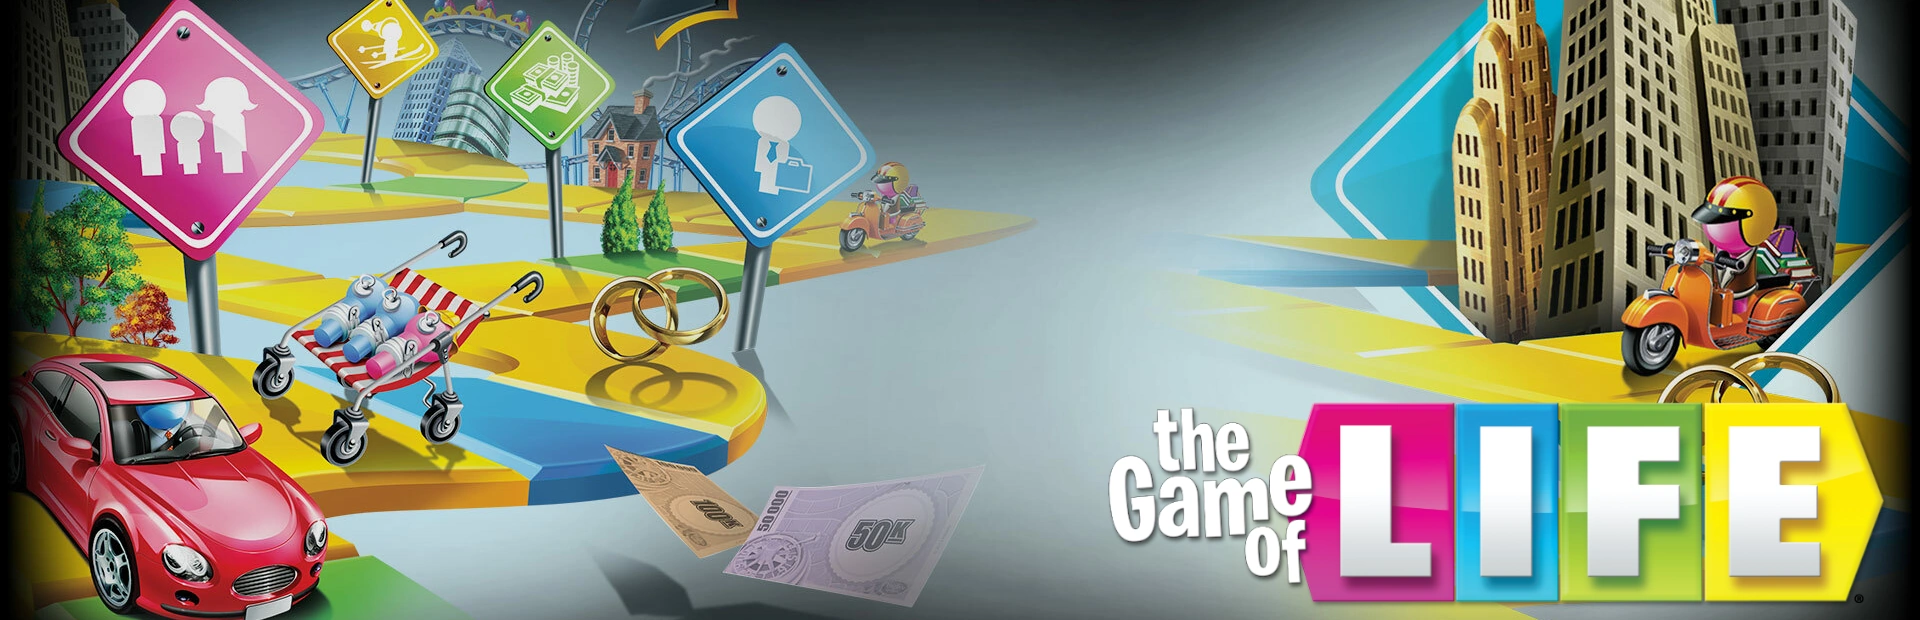 دانلود بازی The Game of Life برای کامپیوتر | گیمباتو